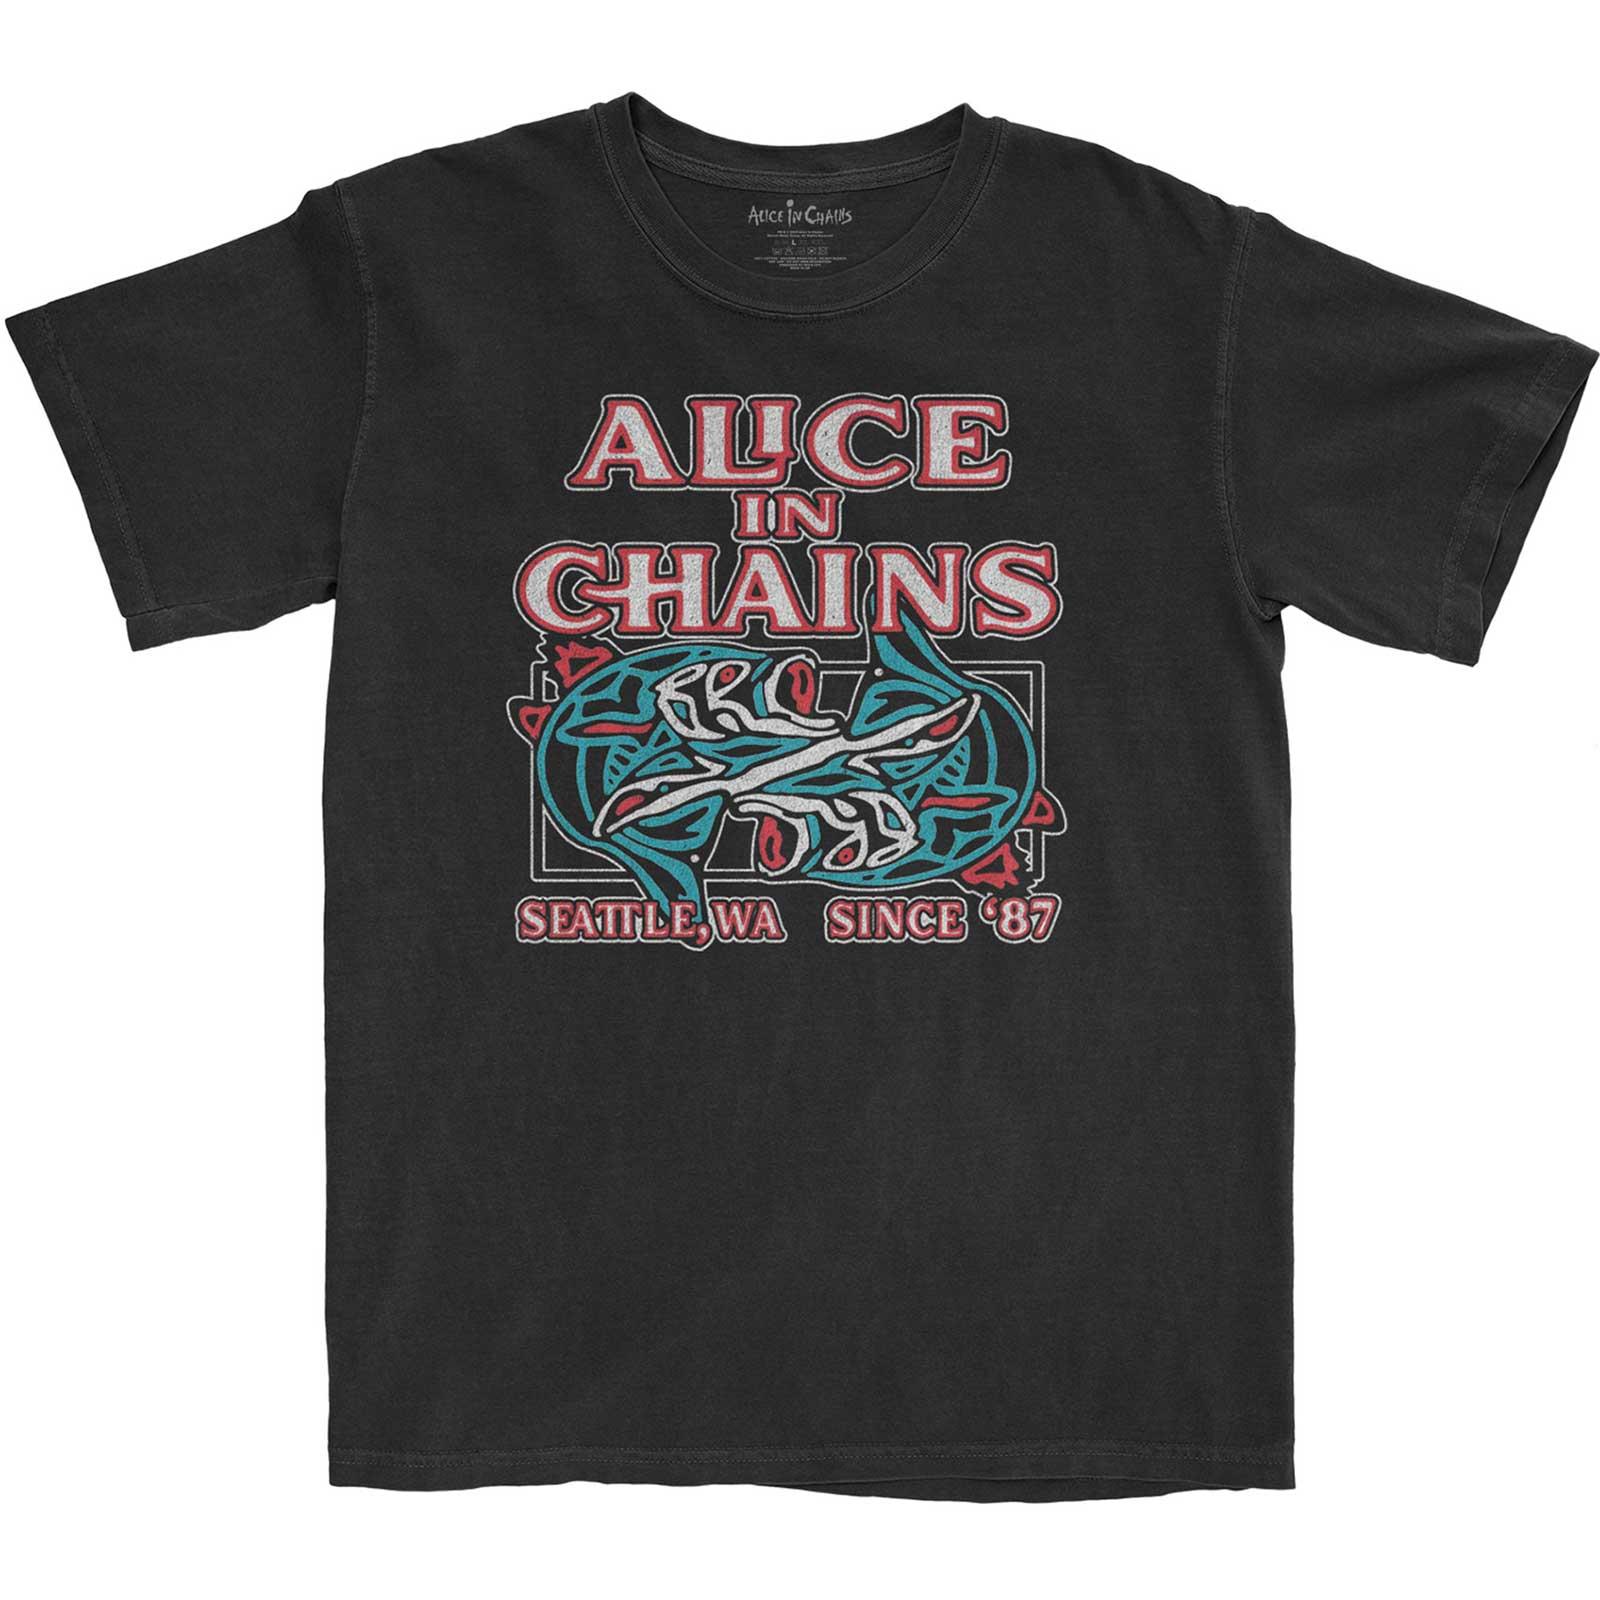 (アリス・イン・チェインズ) Alice In ChaIns オフィシャル商品 ユニセックス Totem Fish Tシャツ コットン 半袖 トップス 【海外通販】